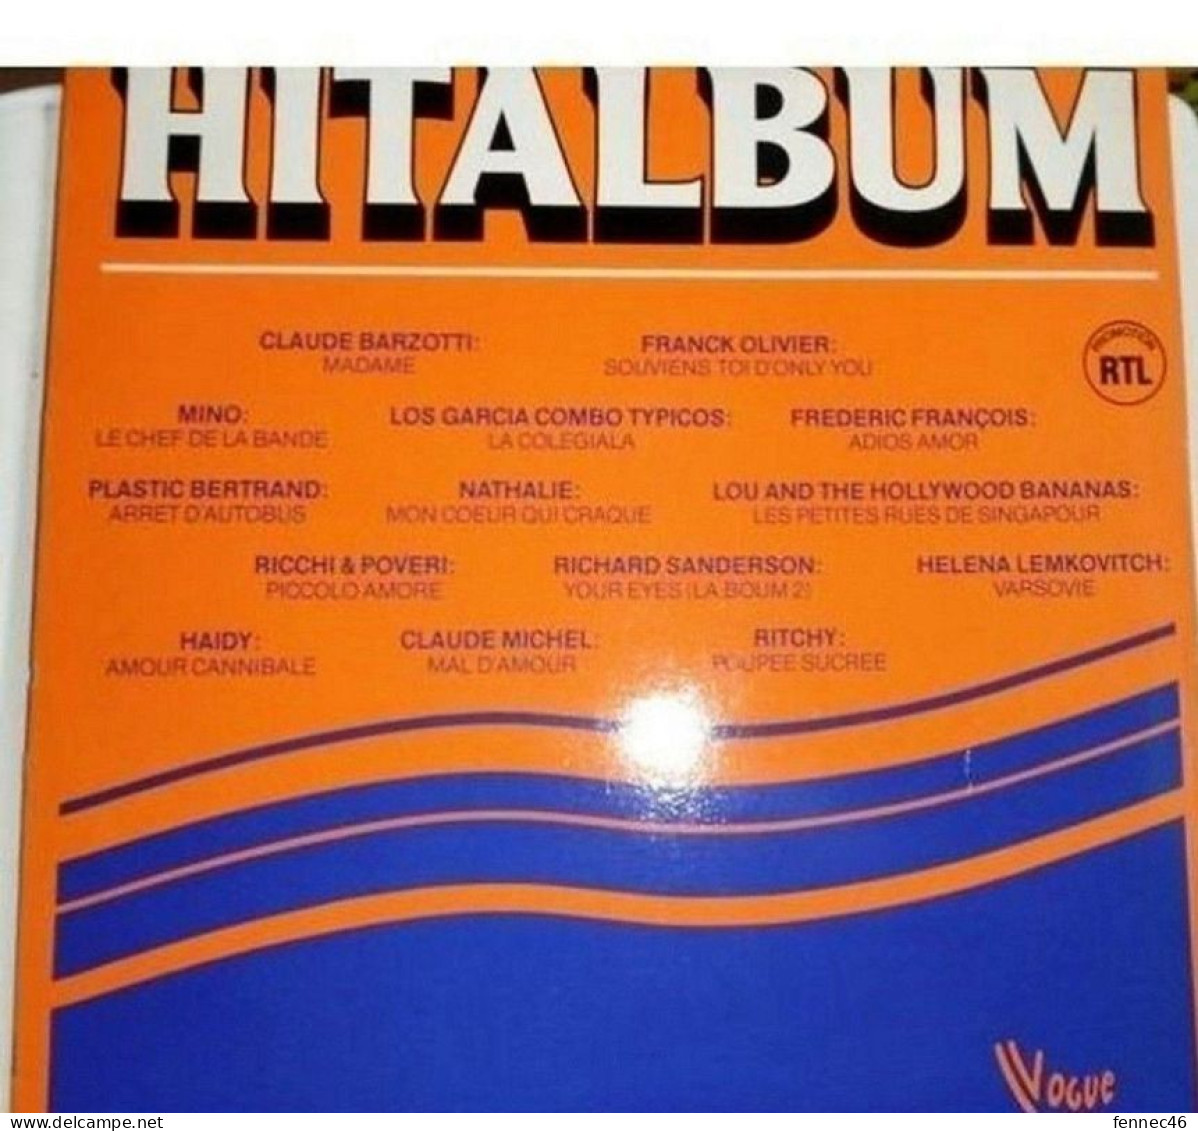 * Vinyle - 33t - HITALBUM (Claude BARZOTTI, Claude MICHEL, HAIDY,... - Autres - Musique Française